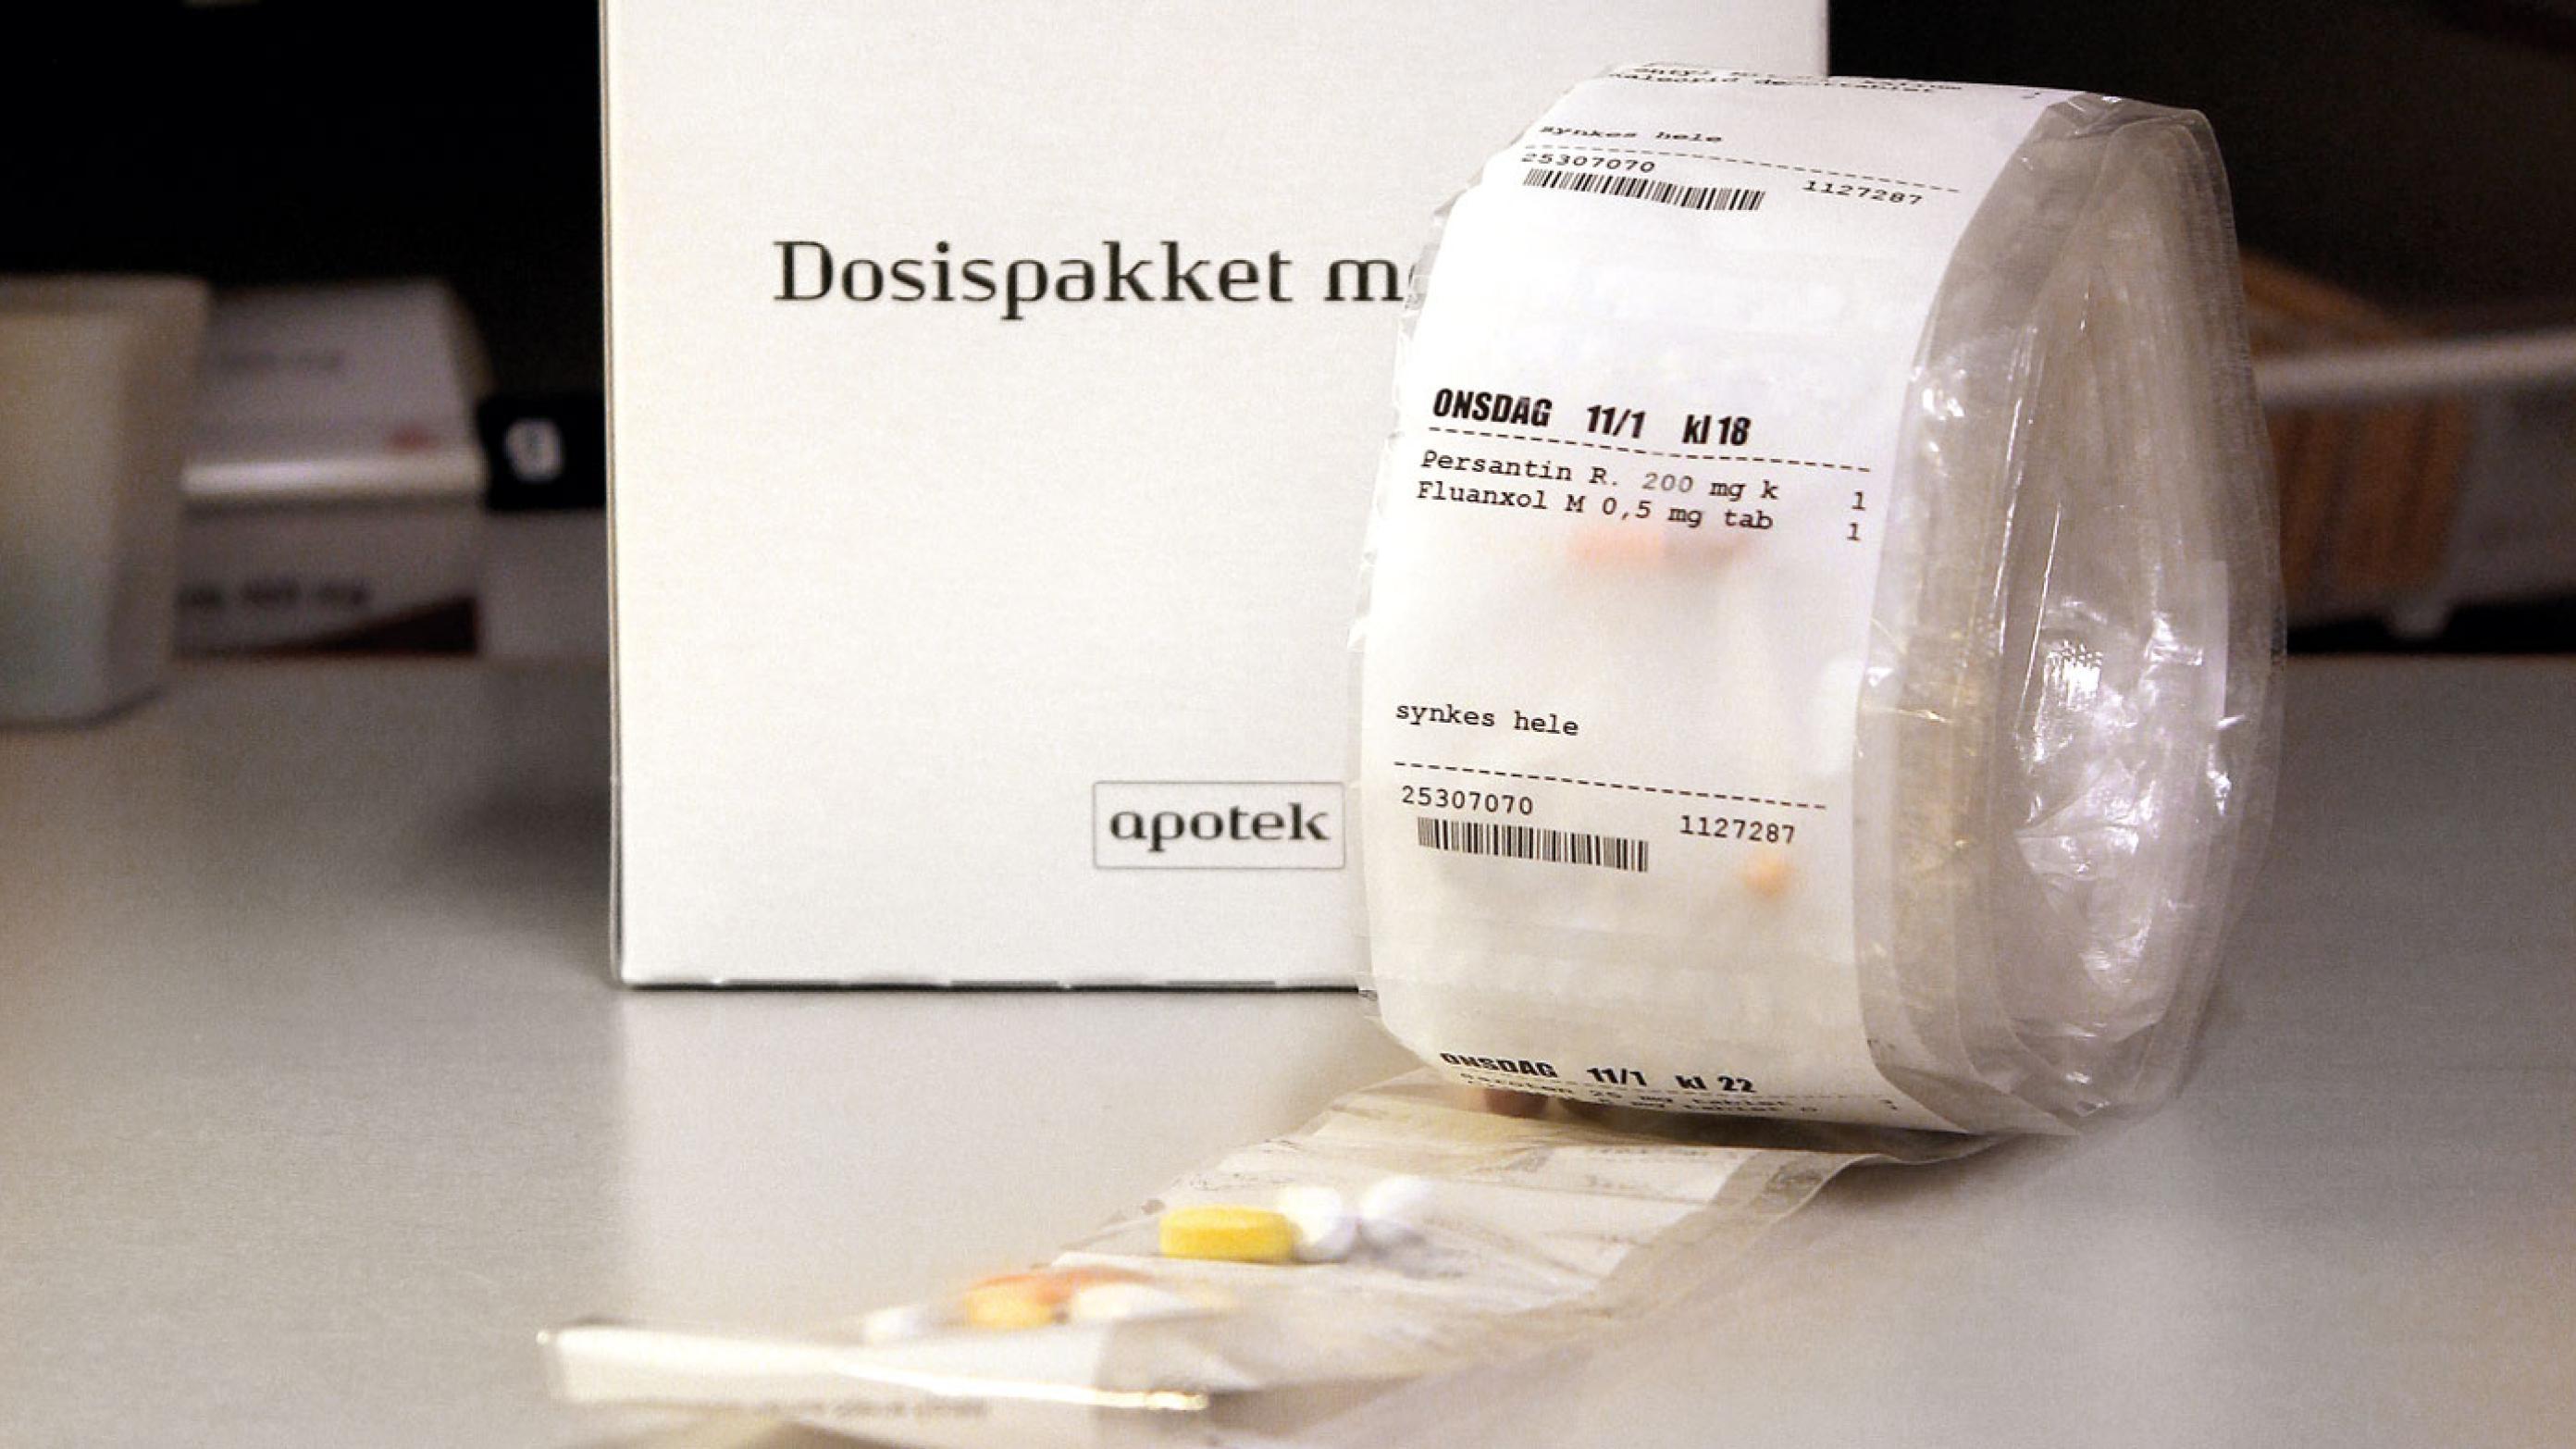 Dosispakket medicin pakkes maskinelt på apoteket. Foto: Ugeskrift for Læger